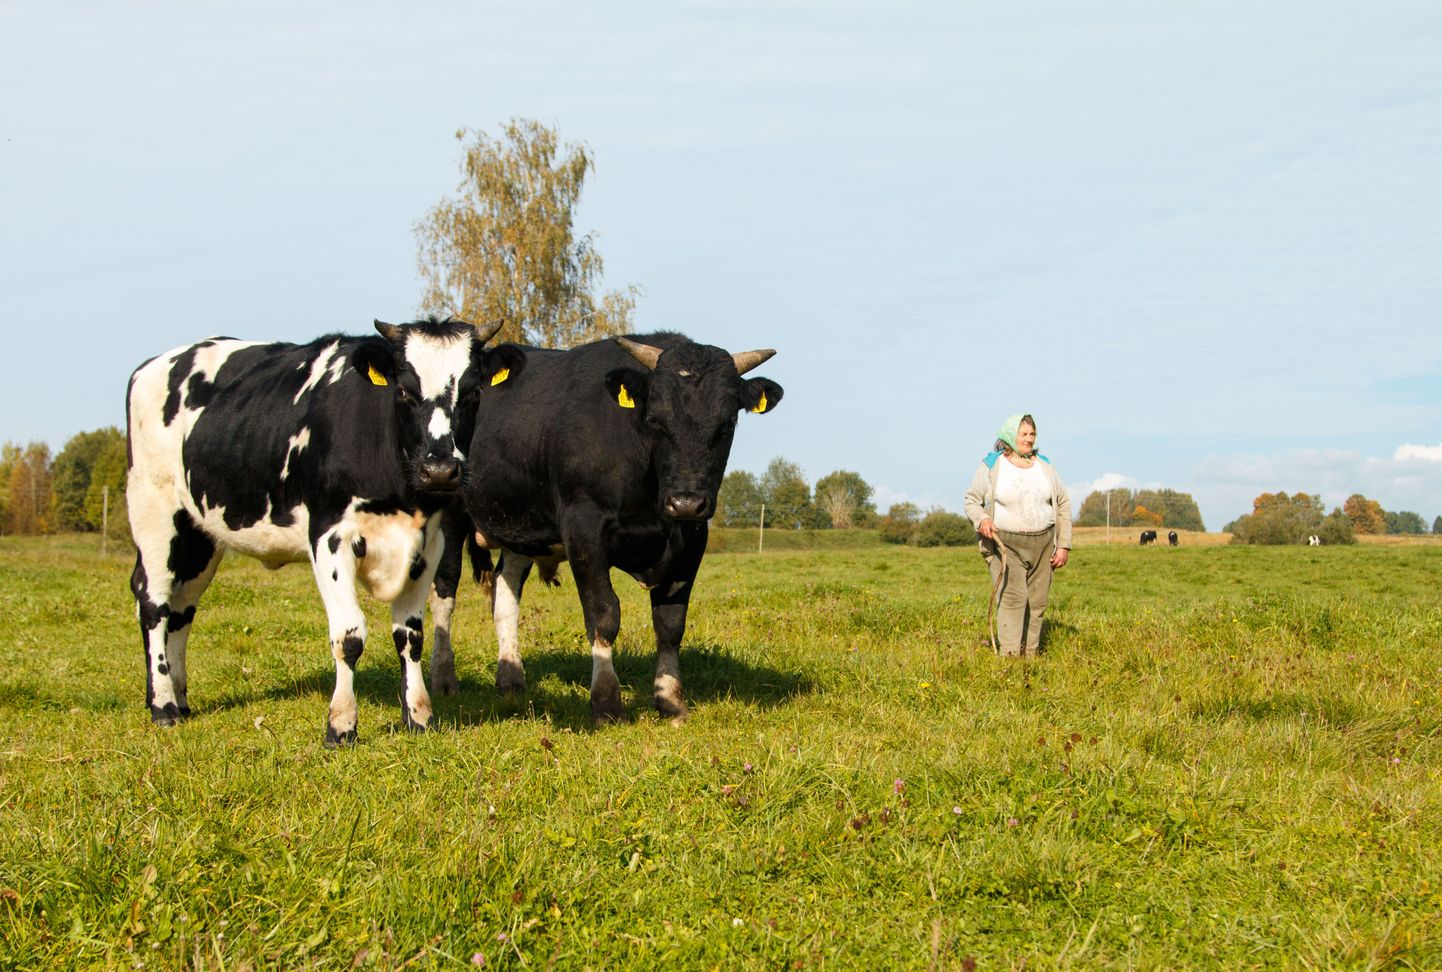 Loomade perenaine Laine Saaron ütles, et käib pullide lihakombinaati viimiseks aega kinni panemas võib-olla juba täna. Esiplaanil karja lehm ja pull.